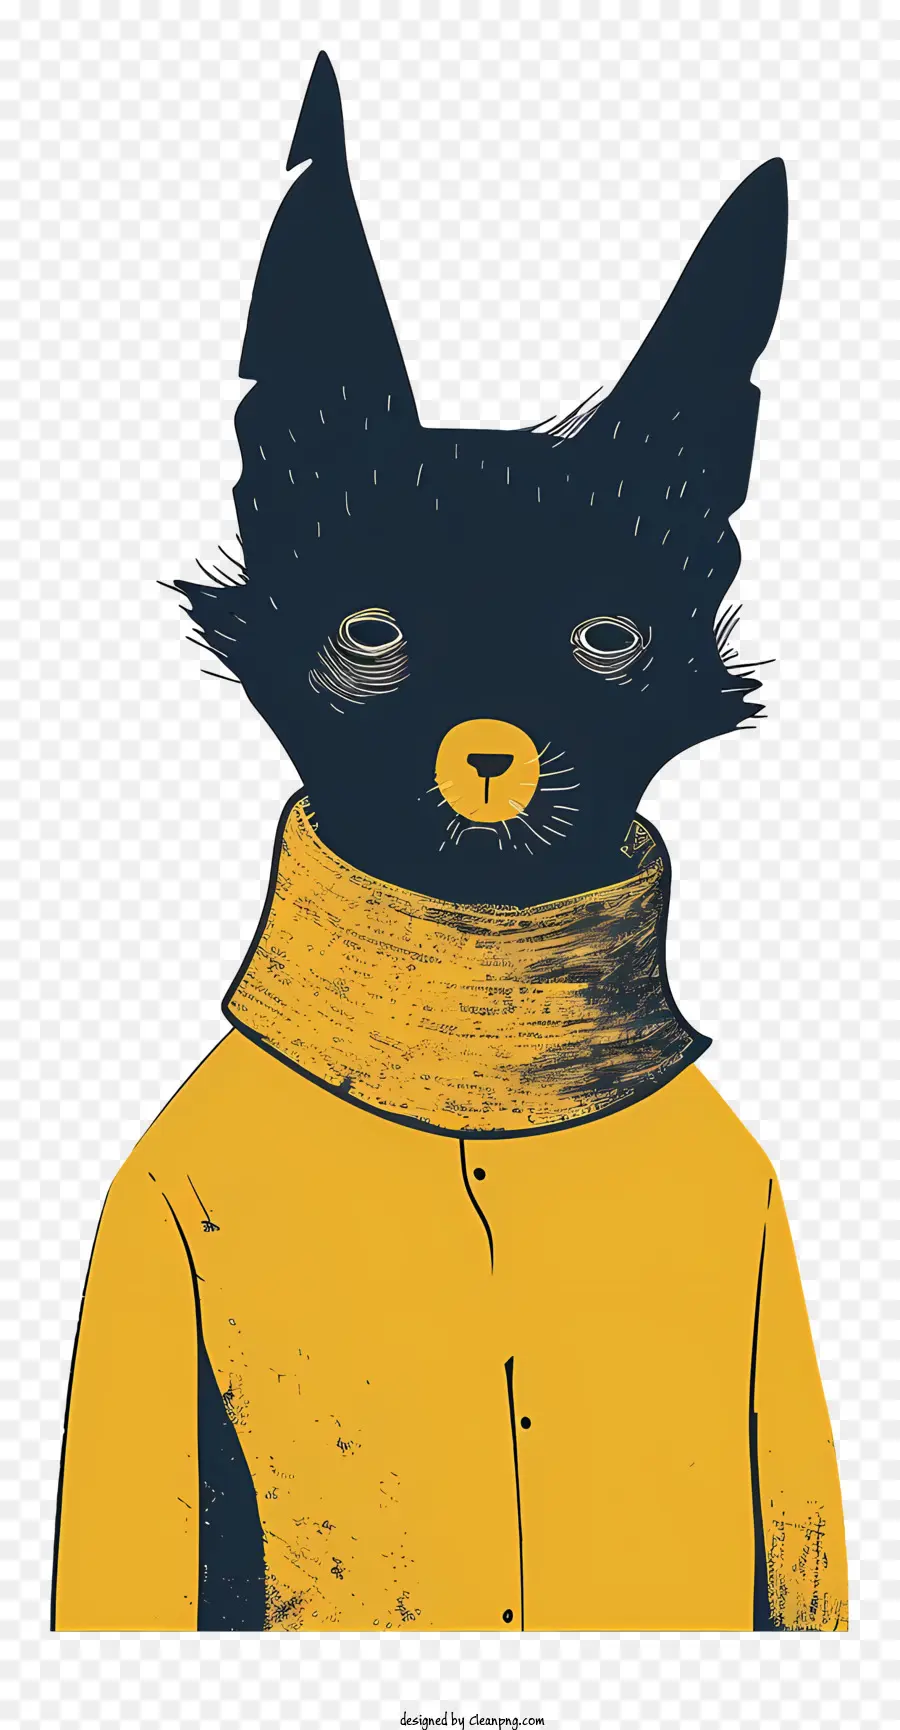 cartoon Katze - Cartoonkatze im gelben Pullover, roter Kragen